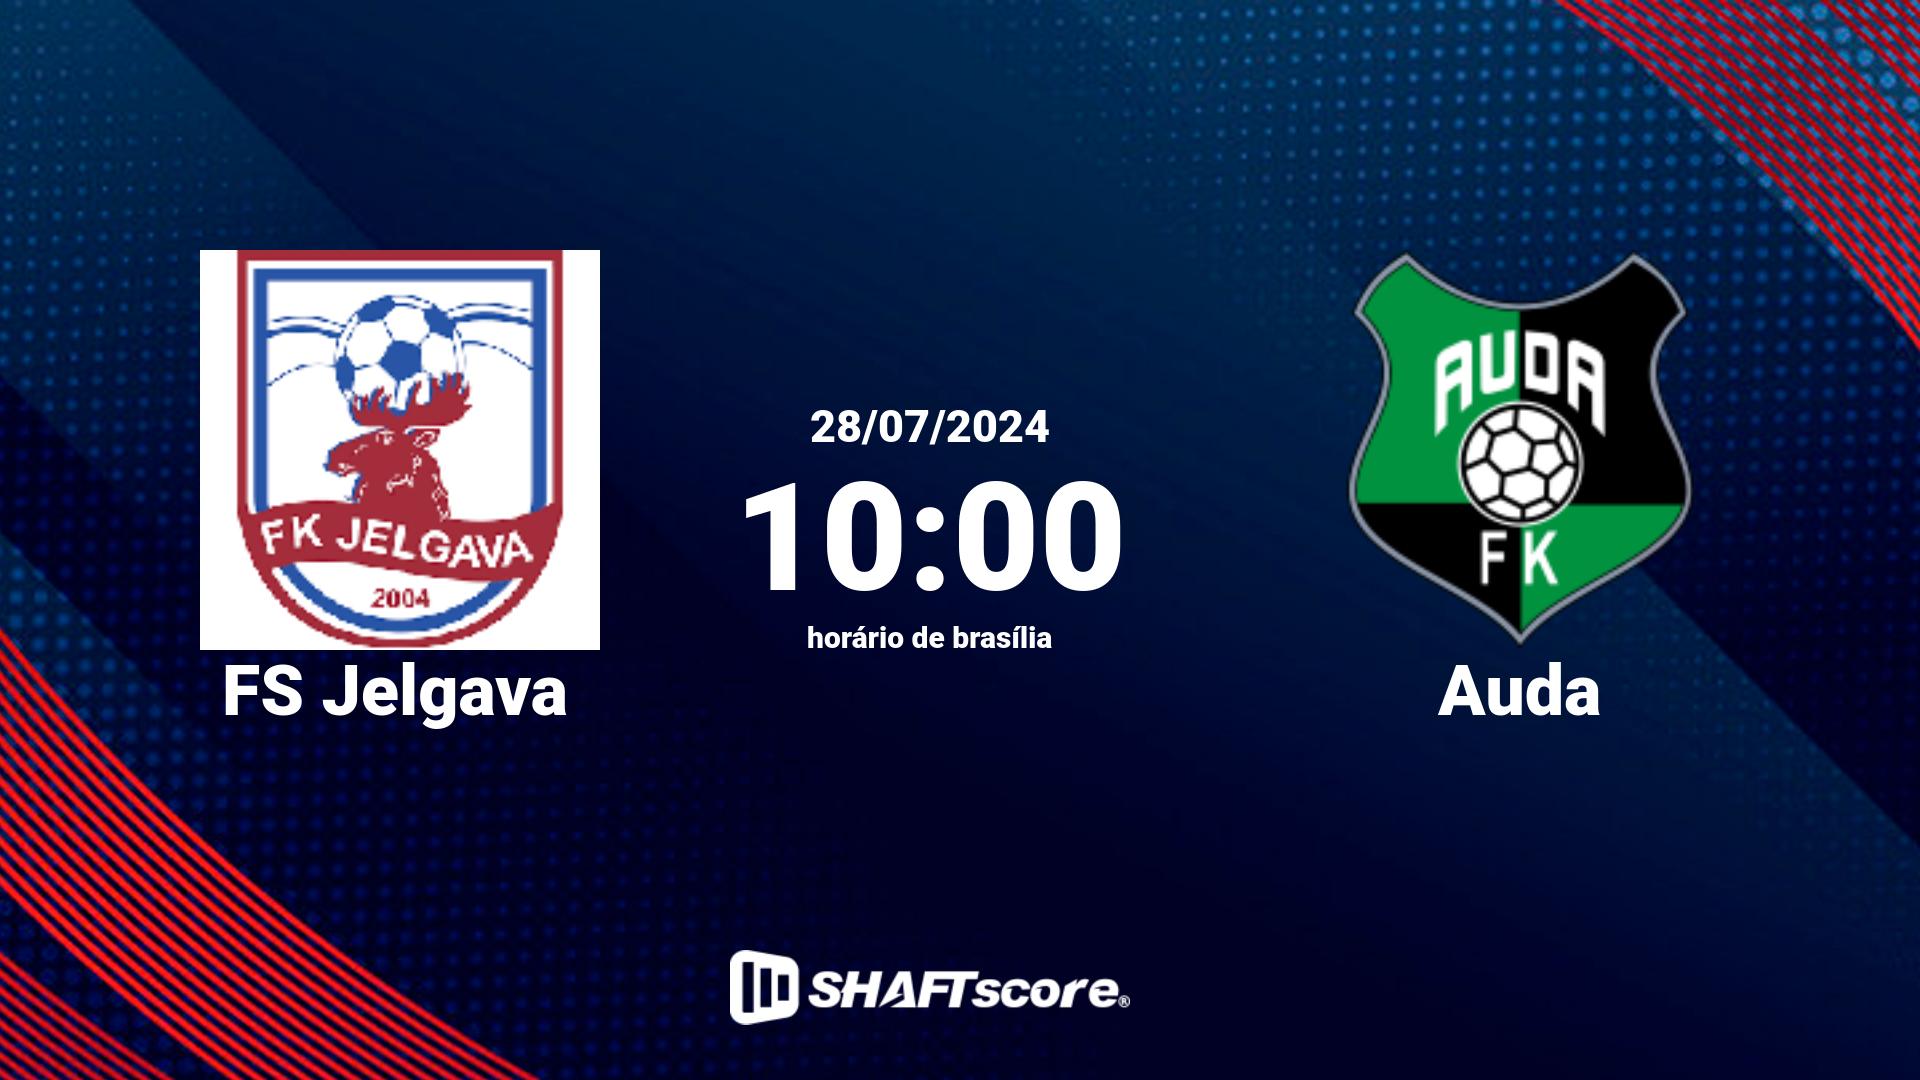 Estatísticas do jogo FS Jelgava vs Auda 28.07 10:00